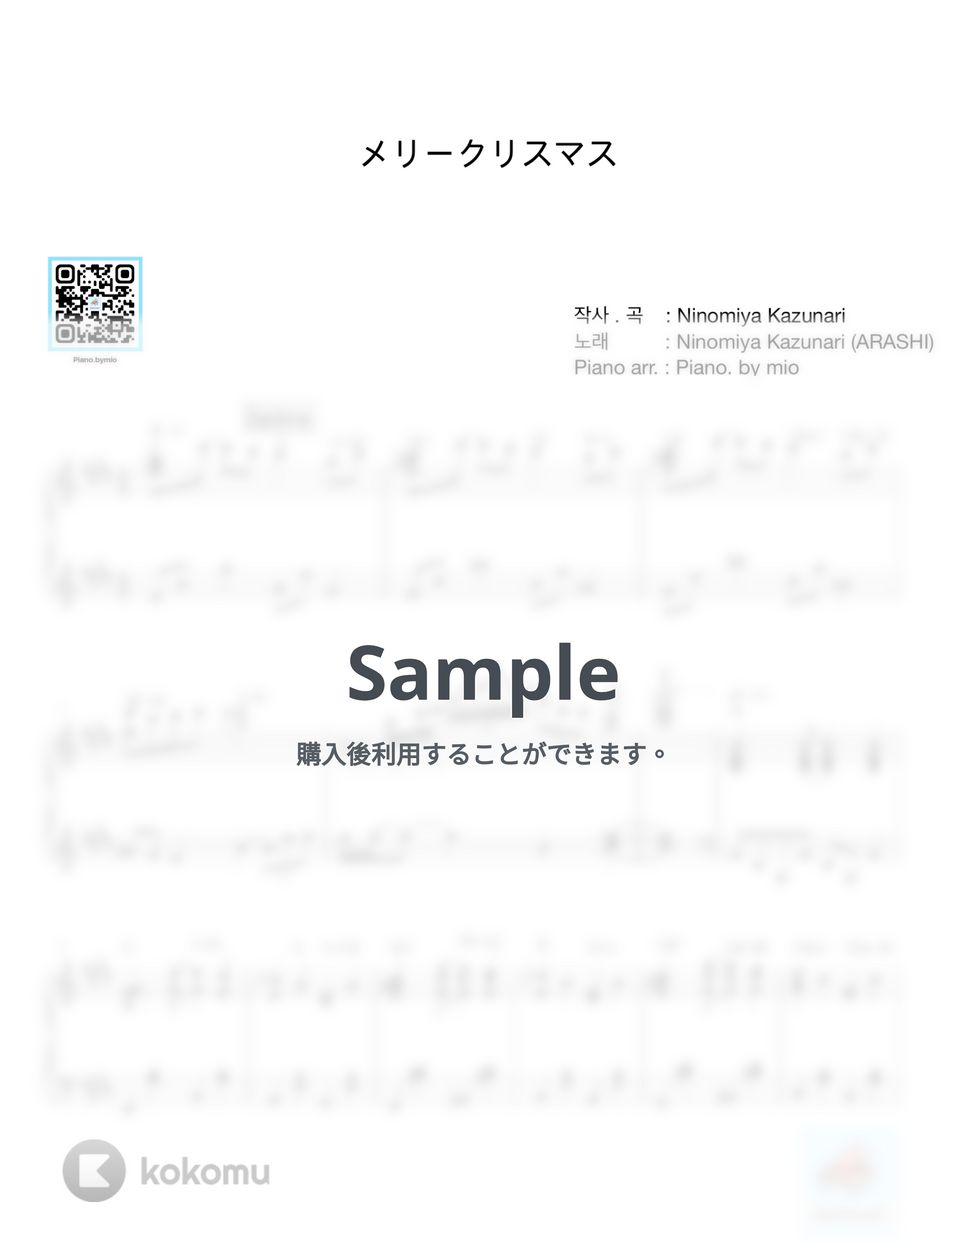 二宮和也(ARASHI) - メリークリスマス by Piano . by mio